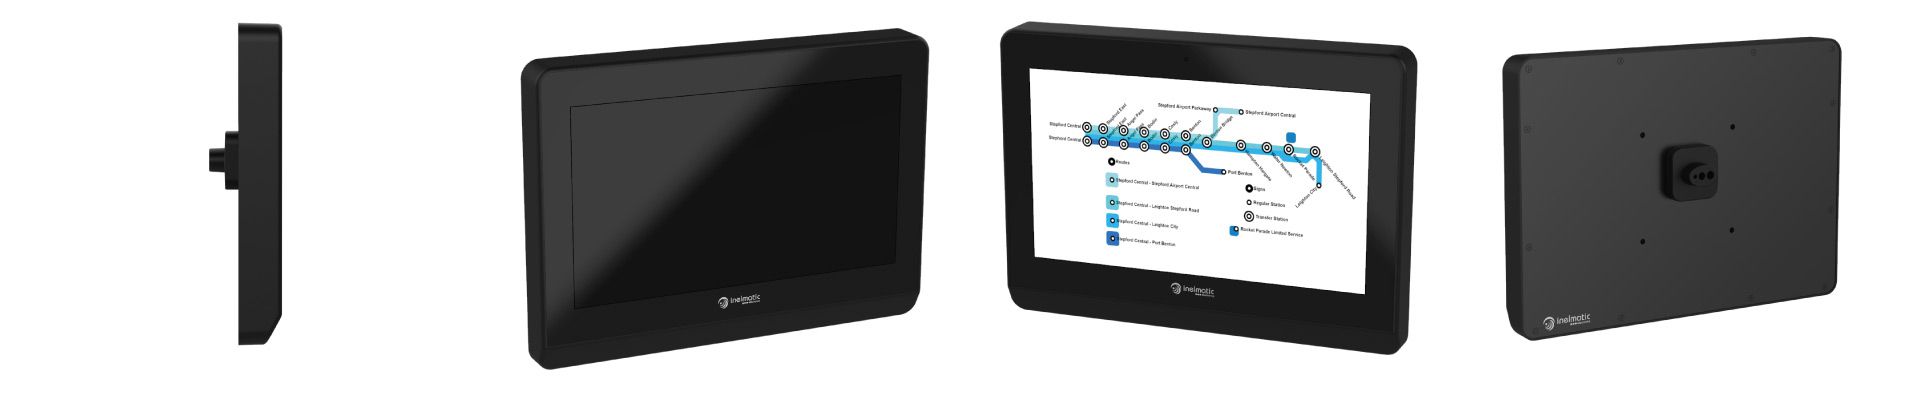 Monitores robustos incluyen un controlador que realizan un ajuste automático y manual de la luz de fondo - Inelmatic